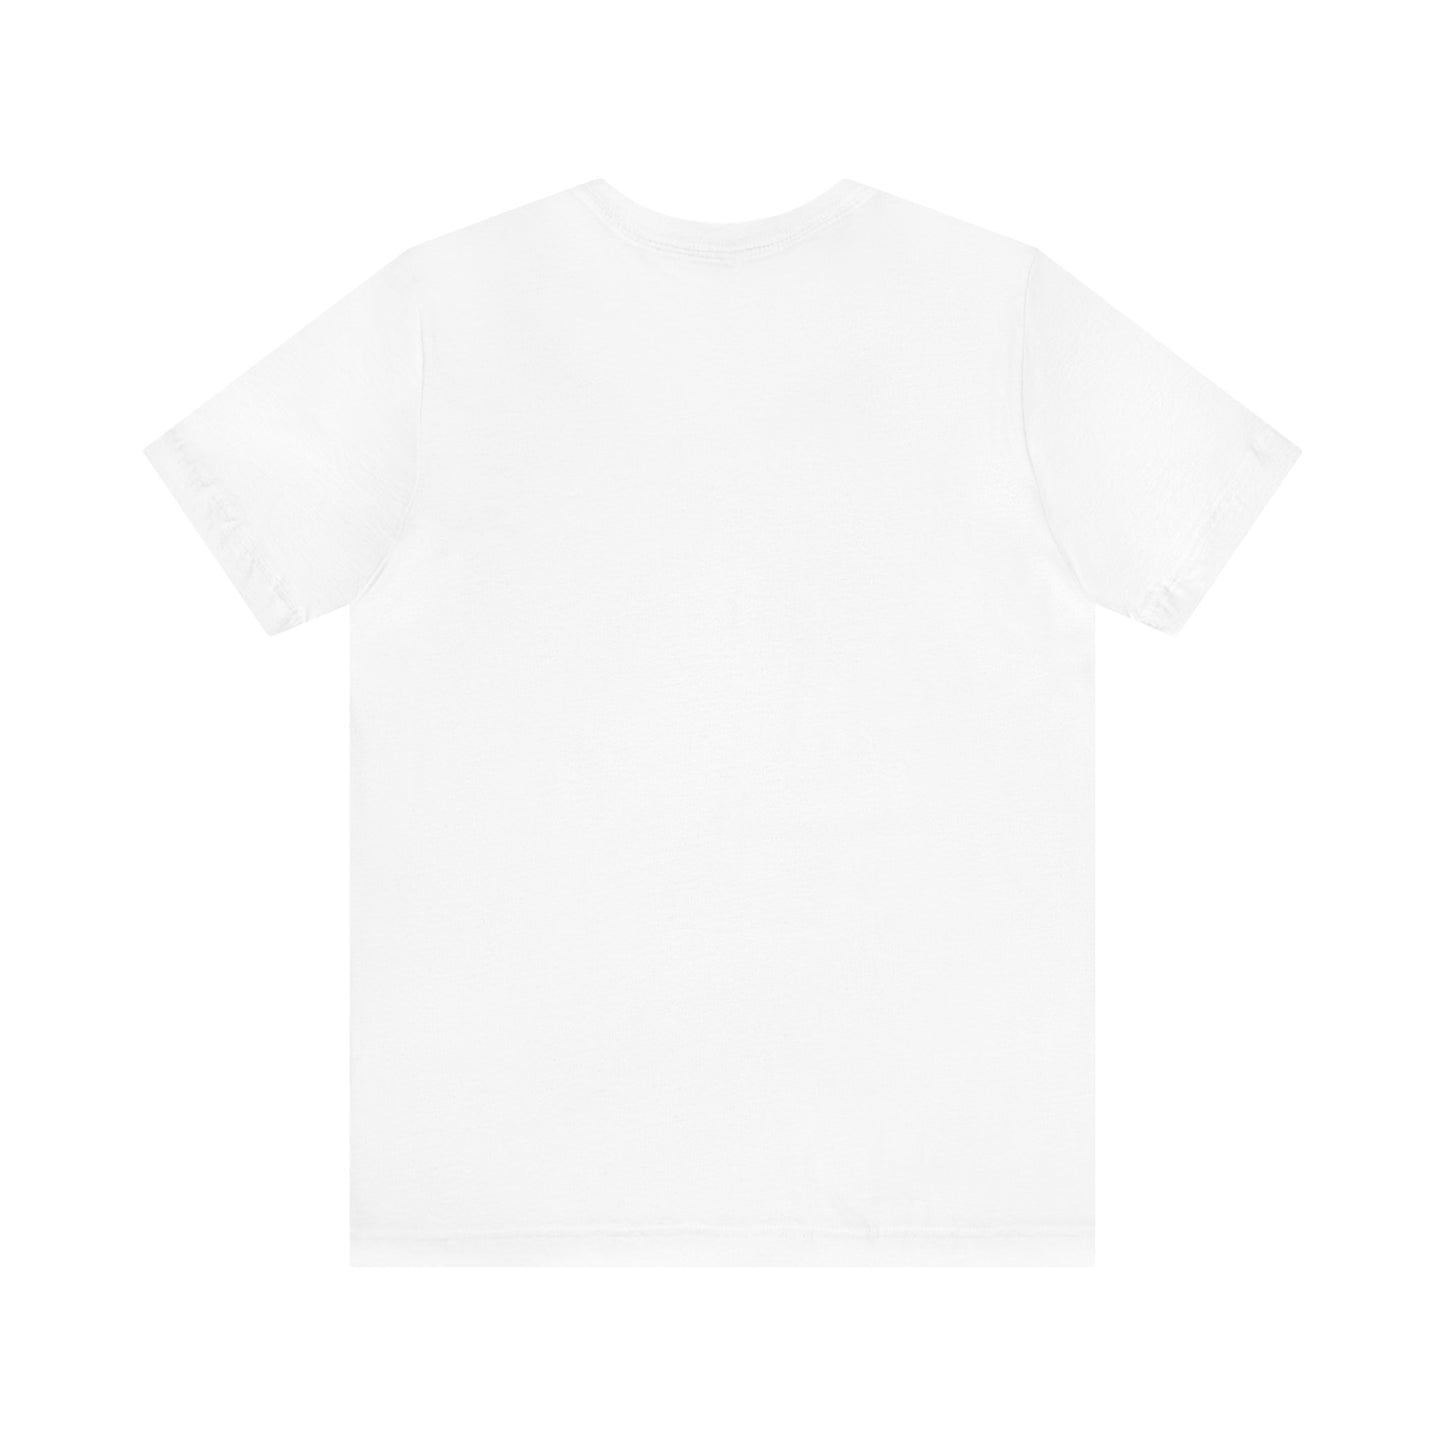 Abbeville, AL Unisex T-shirt